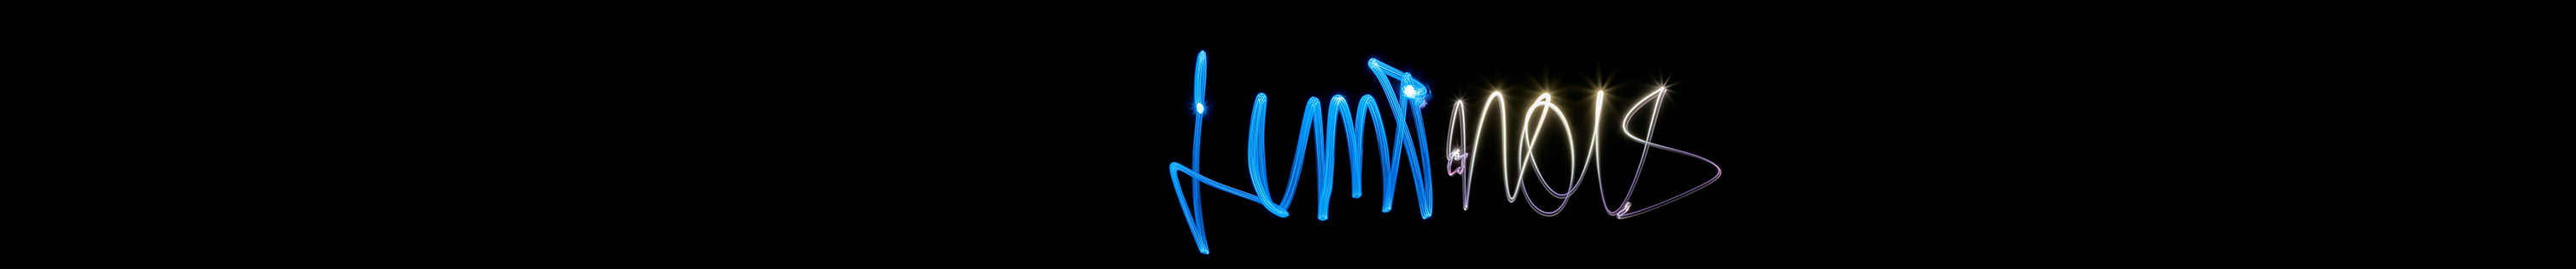 Luminous Design's profile banner